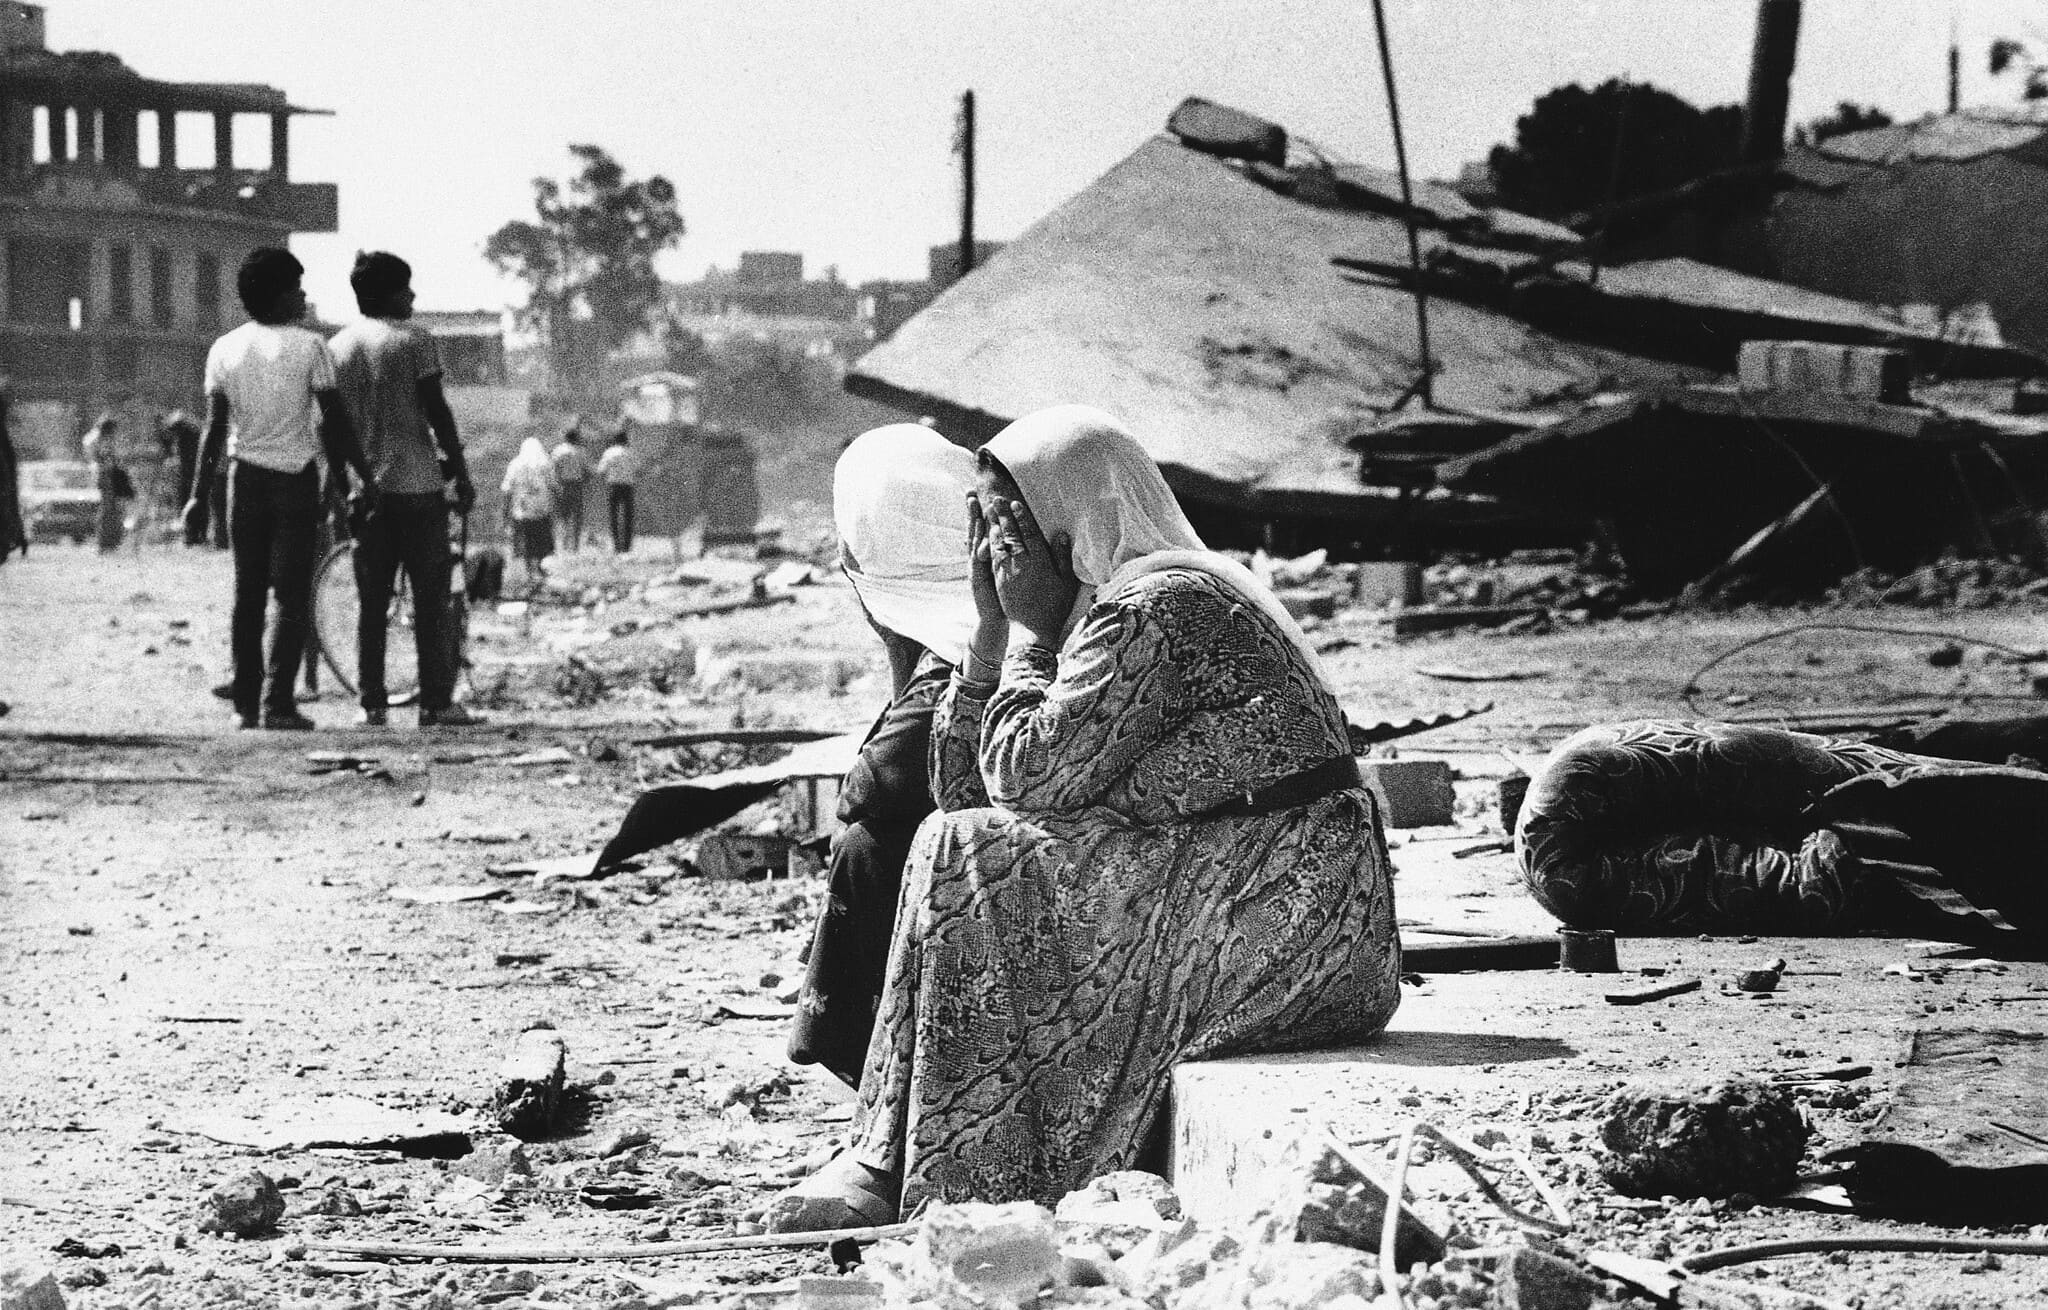 שתי נשים פלסטיניות בוכות על שפת מדרכה במחנה הפליטים סברה במערב ביירות, לבנון, 19 בספטמבר 1982, לאחר שמצאו גופות של קרובי משפחה (צילום: AP Photo/Bill Foley)